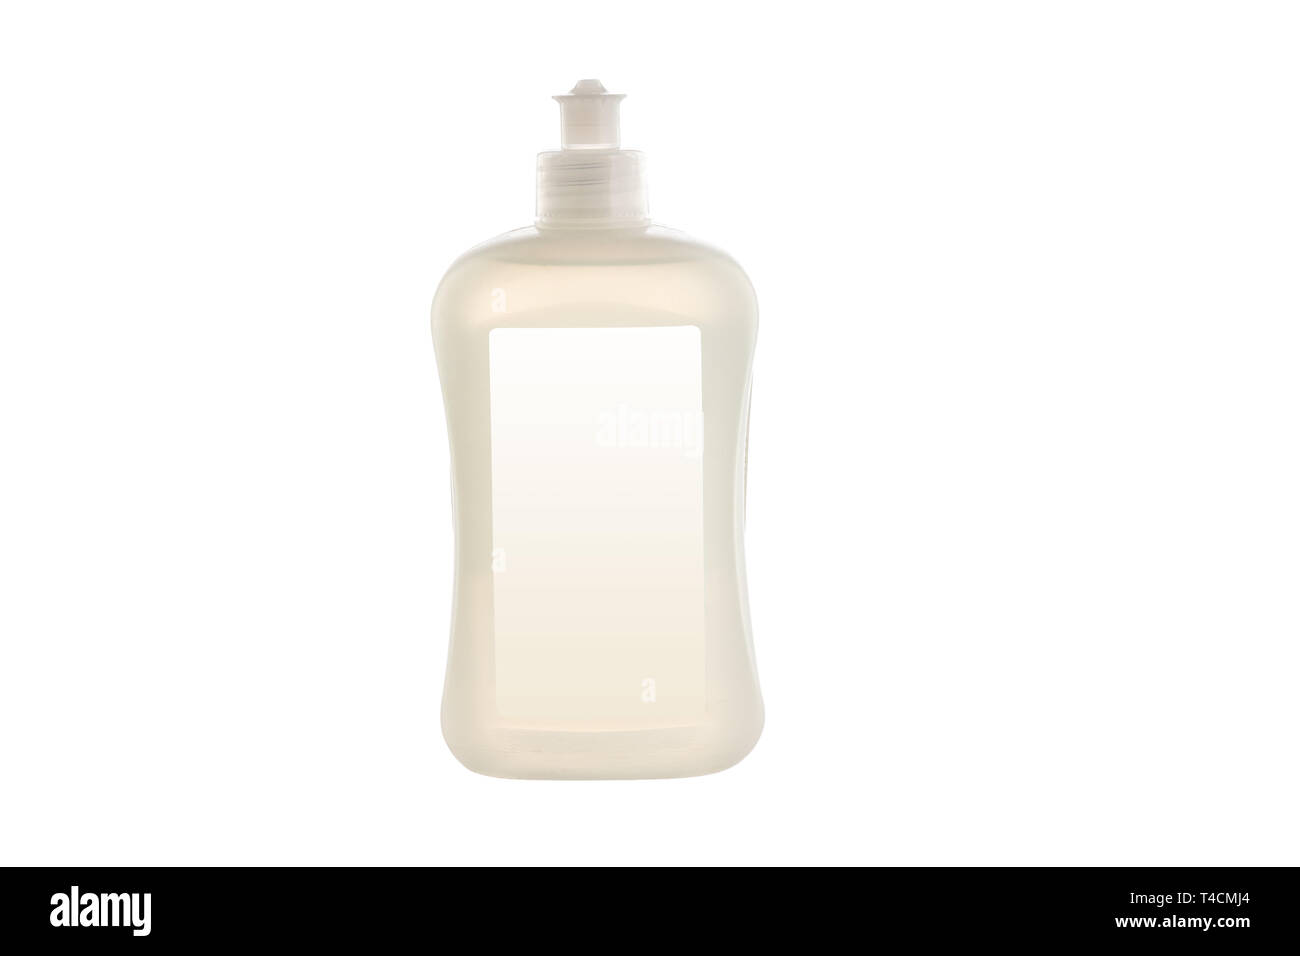 Producto de limpieza de la casa. Botella de plástico con jabón líquido lavavajillas aislado sobre fondo blanco. Foto de stock